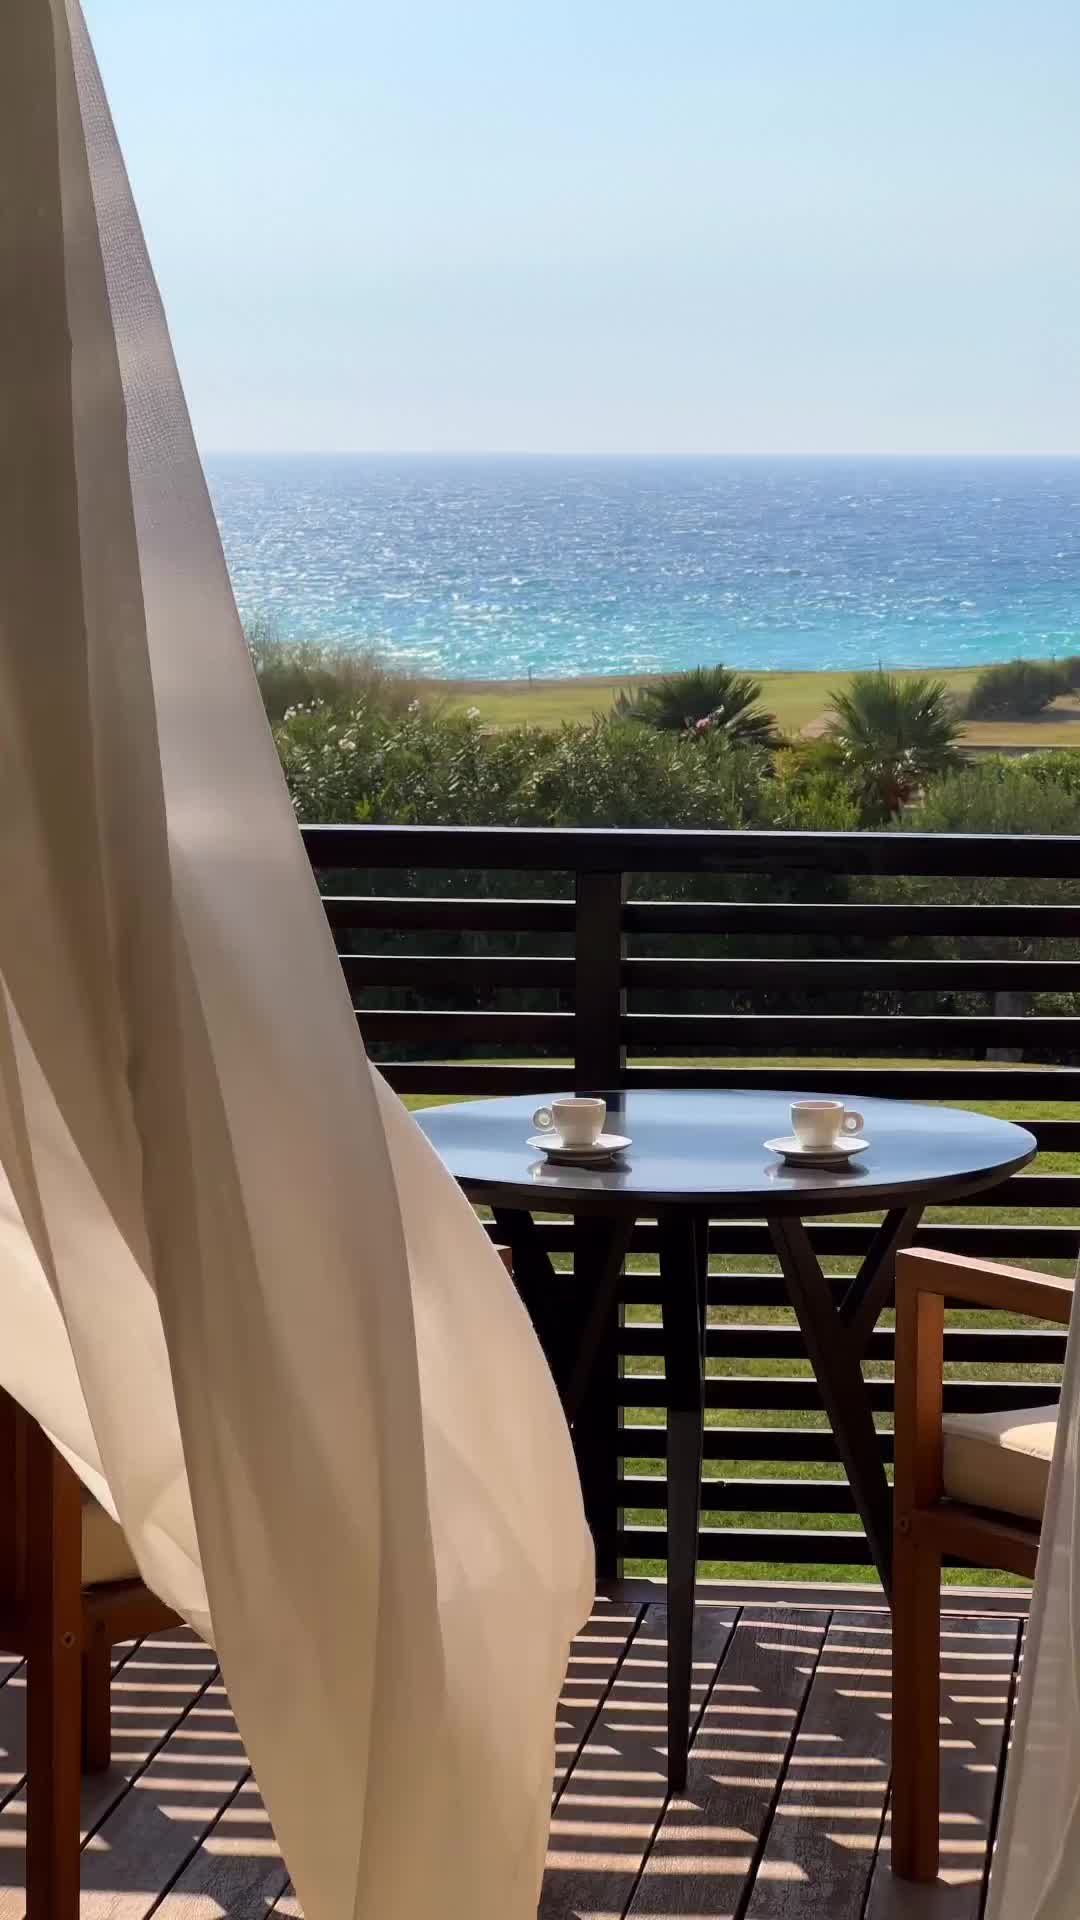 Morning Bliss at Verdura Resort, Sicily